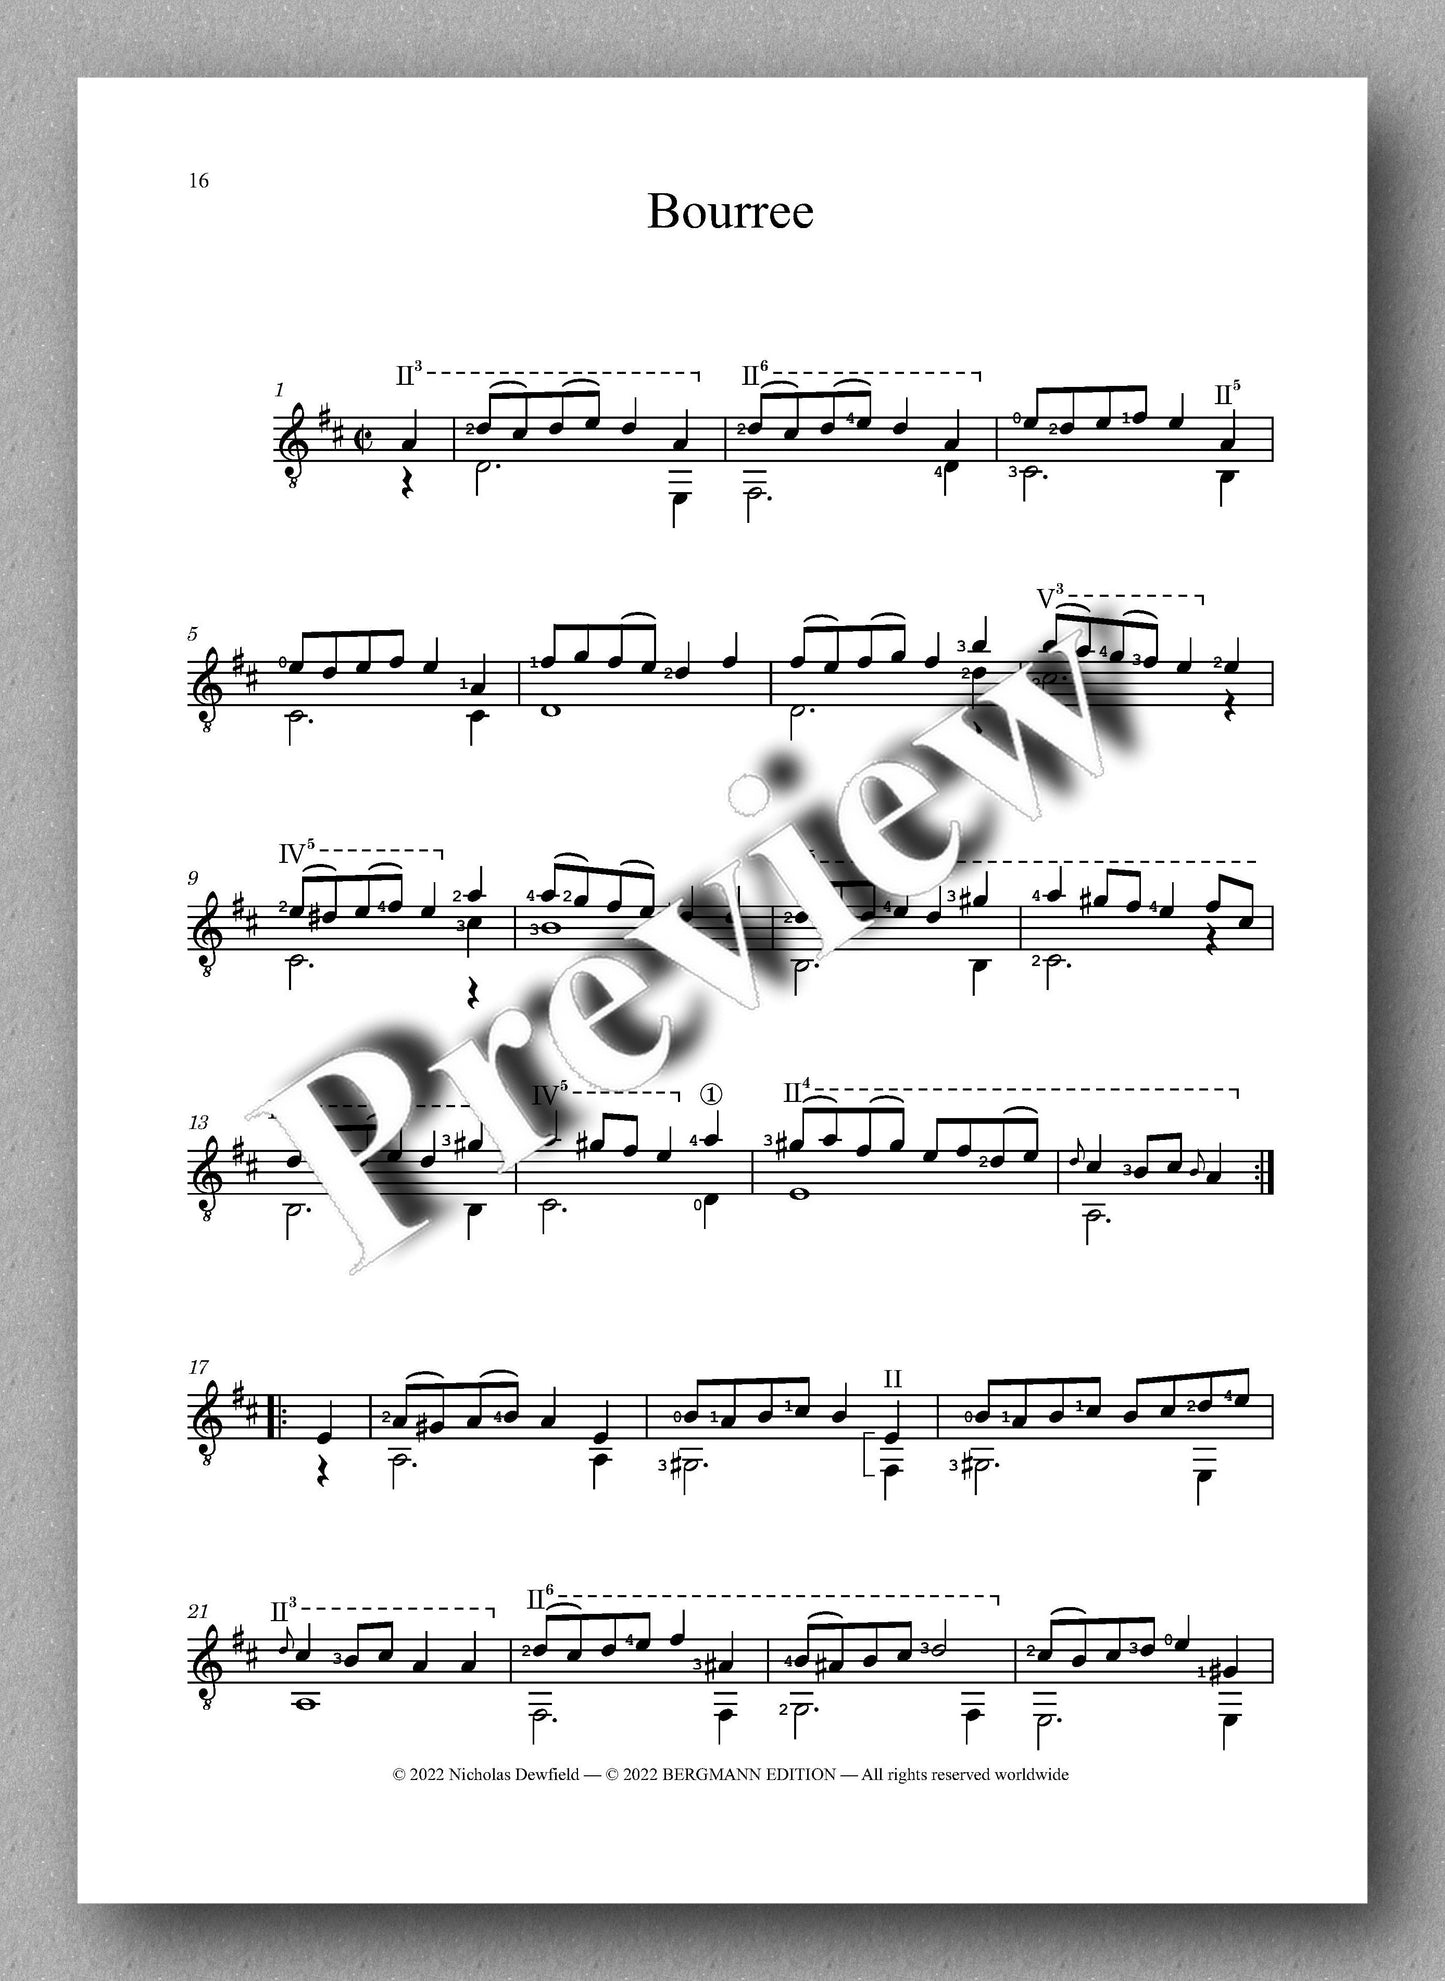 Weiss-Dewfield, Sonata No. 10 - Bouree